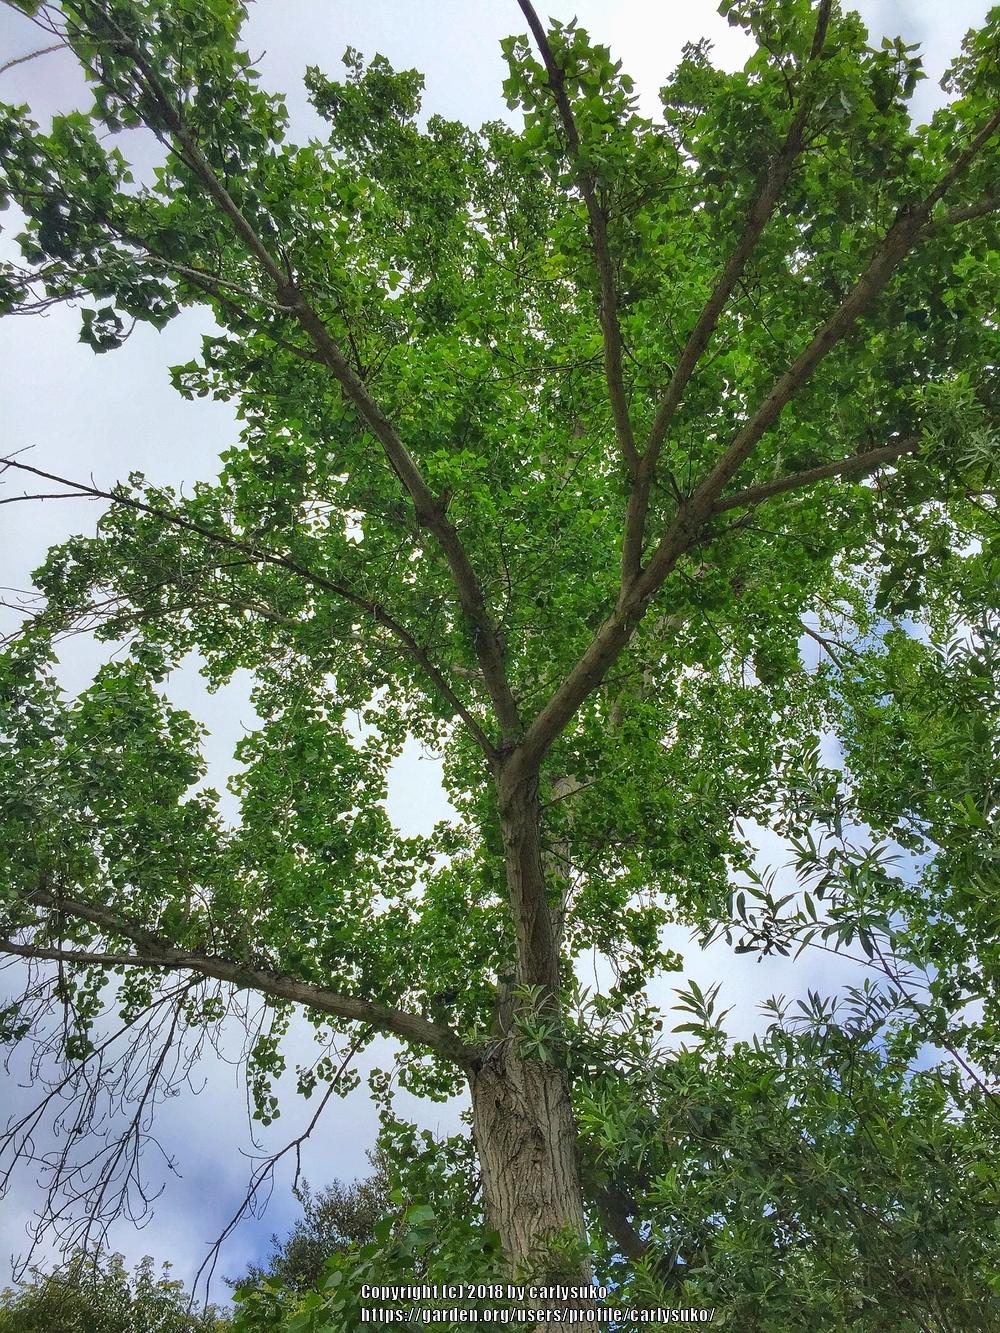 Photo of Fremont Cottonwood (Populus fremontii) uploaded by carlysuko